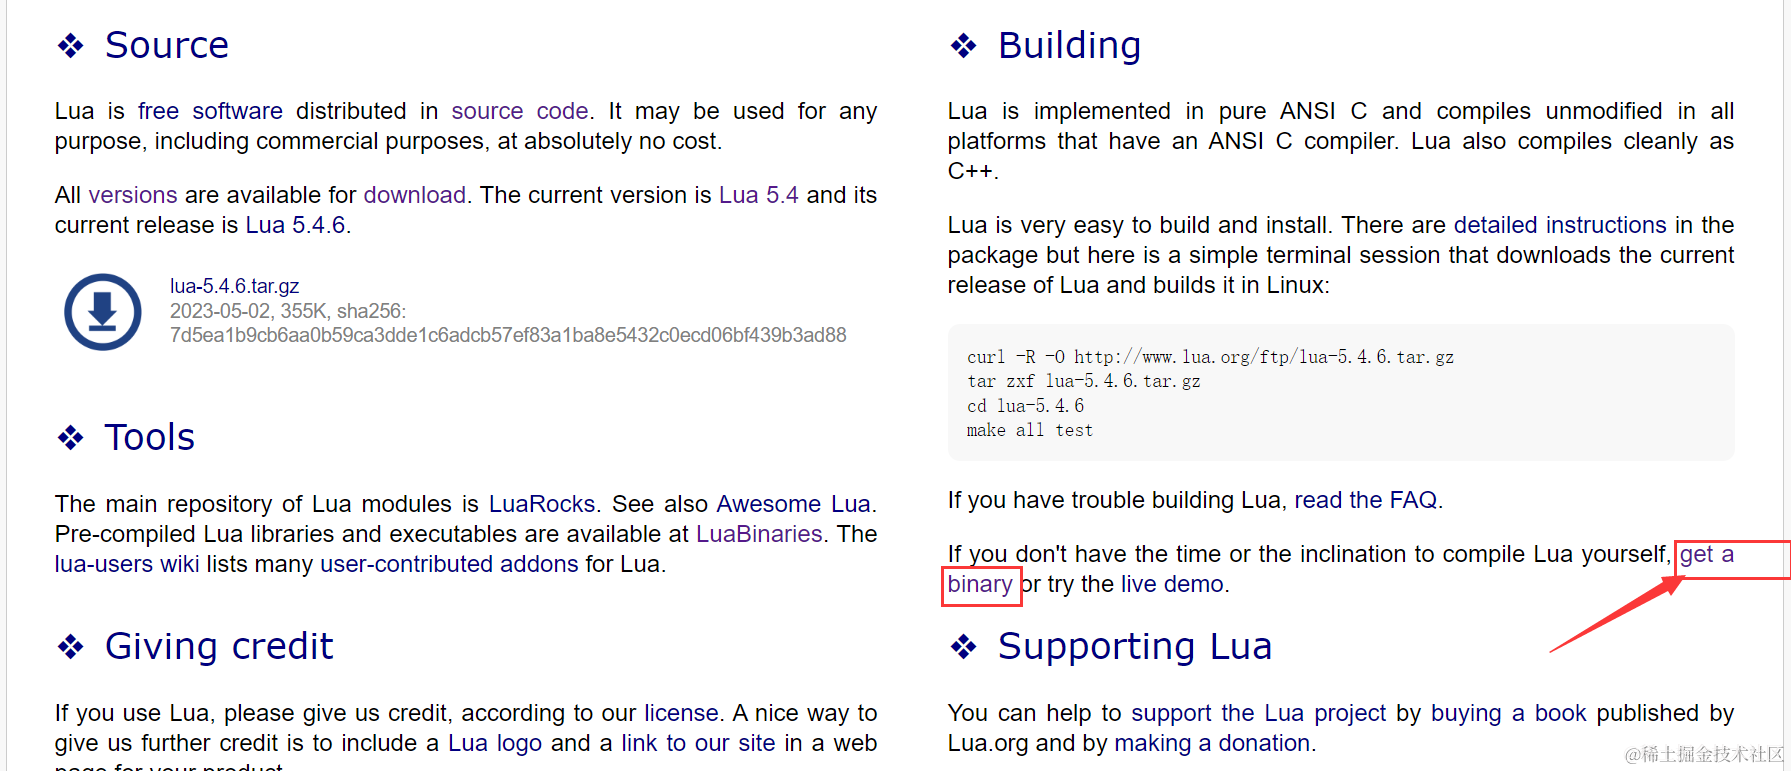 Lua02——应用场景及环境安装_Lua_02